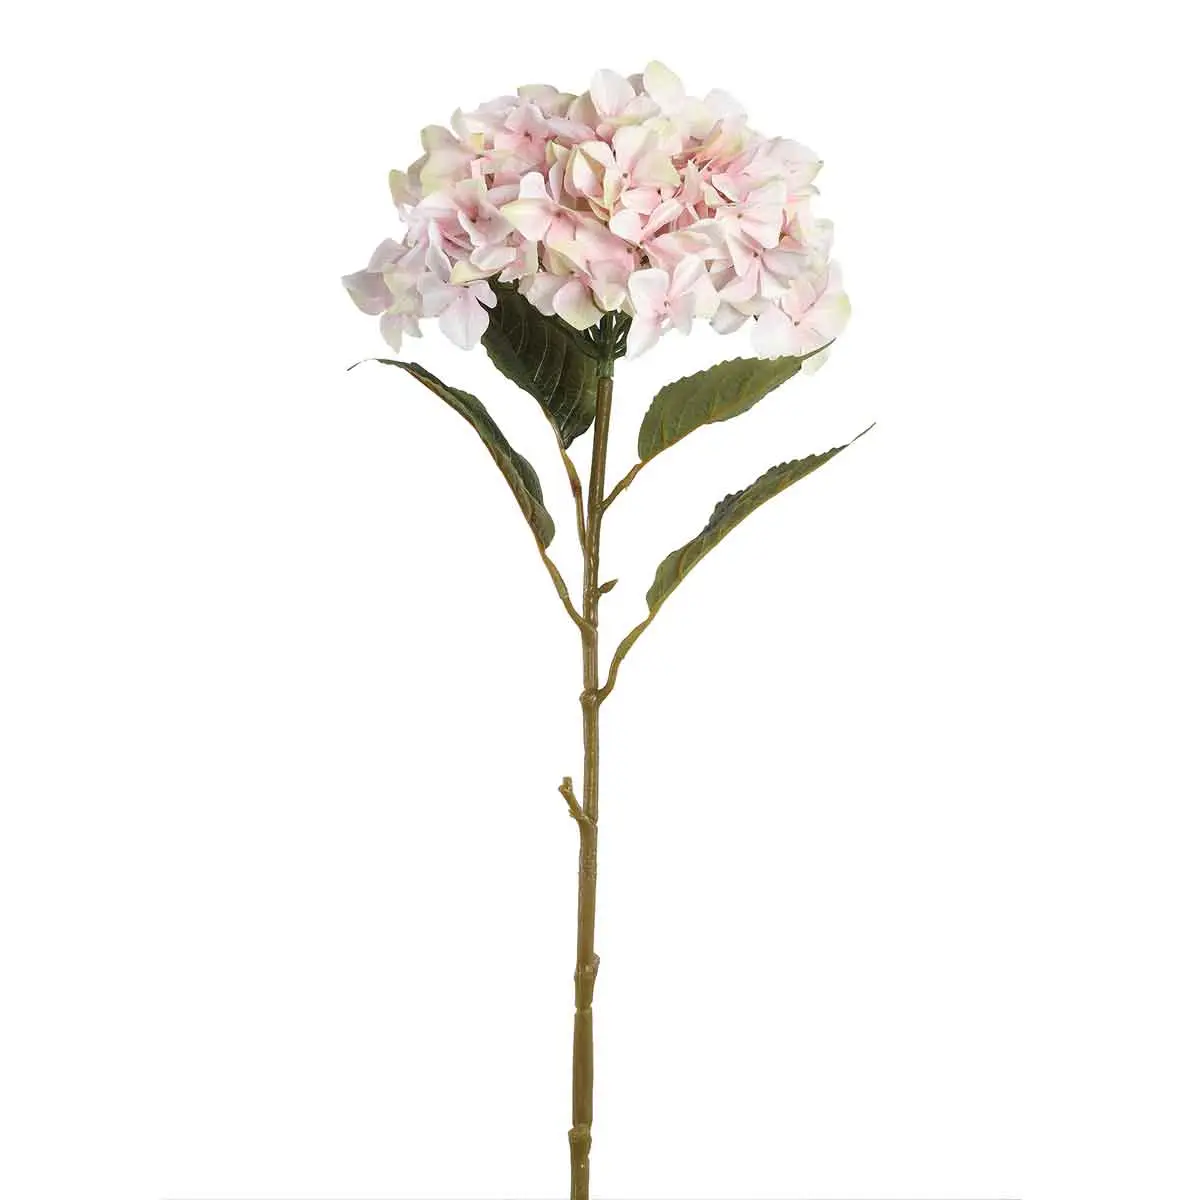 K眉nstliche Pflanze Hydrangea